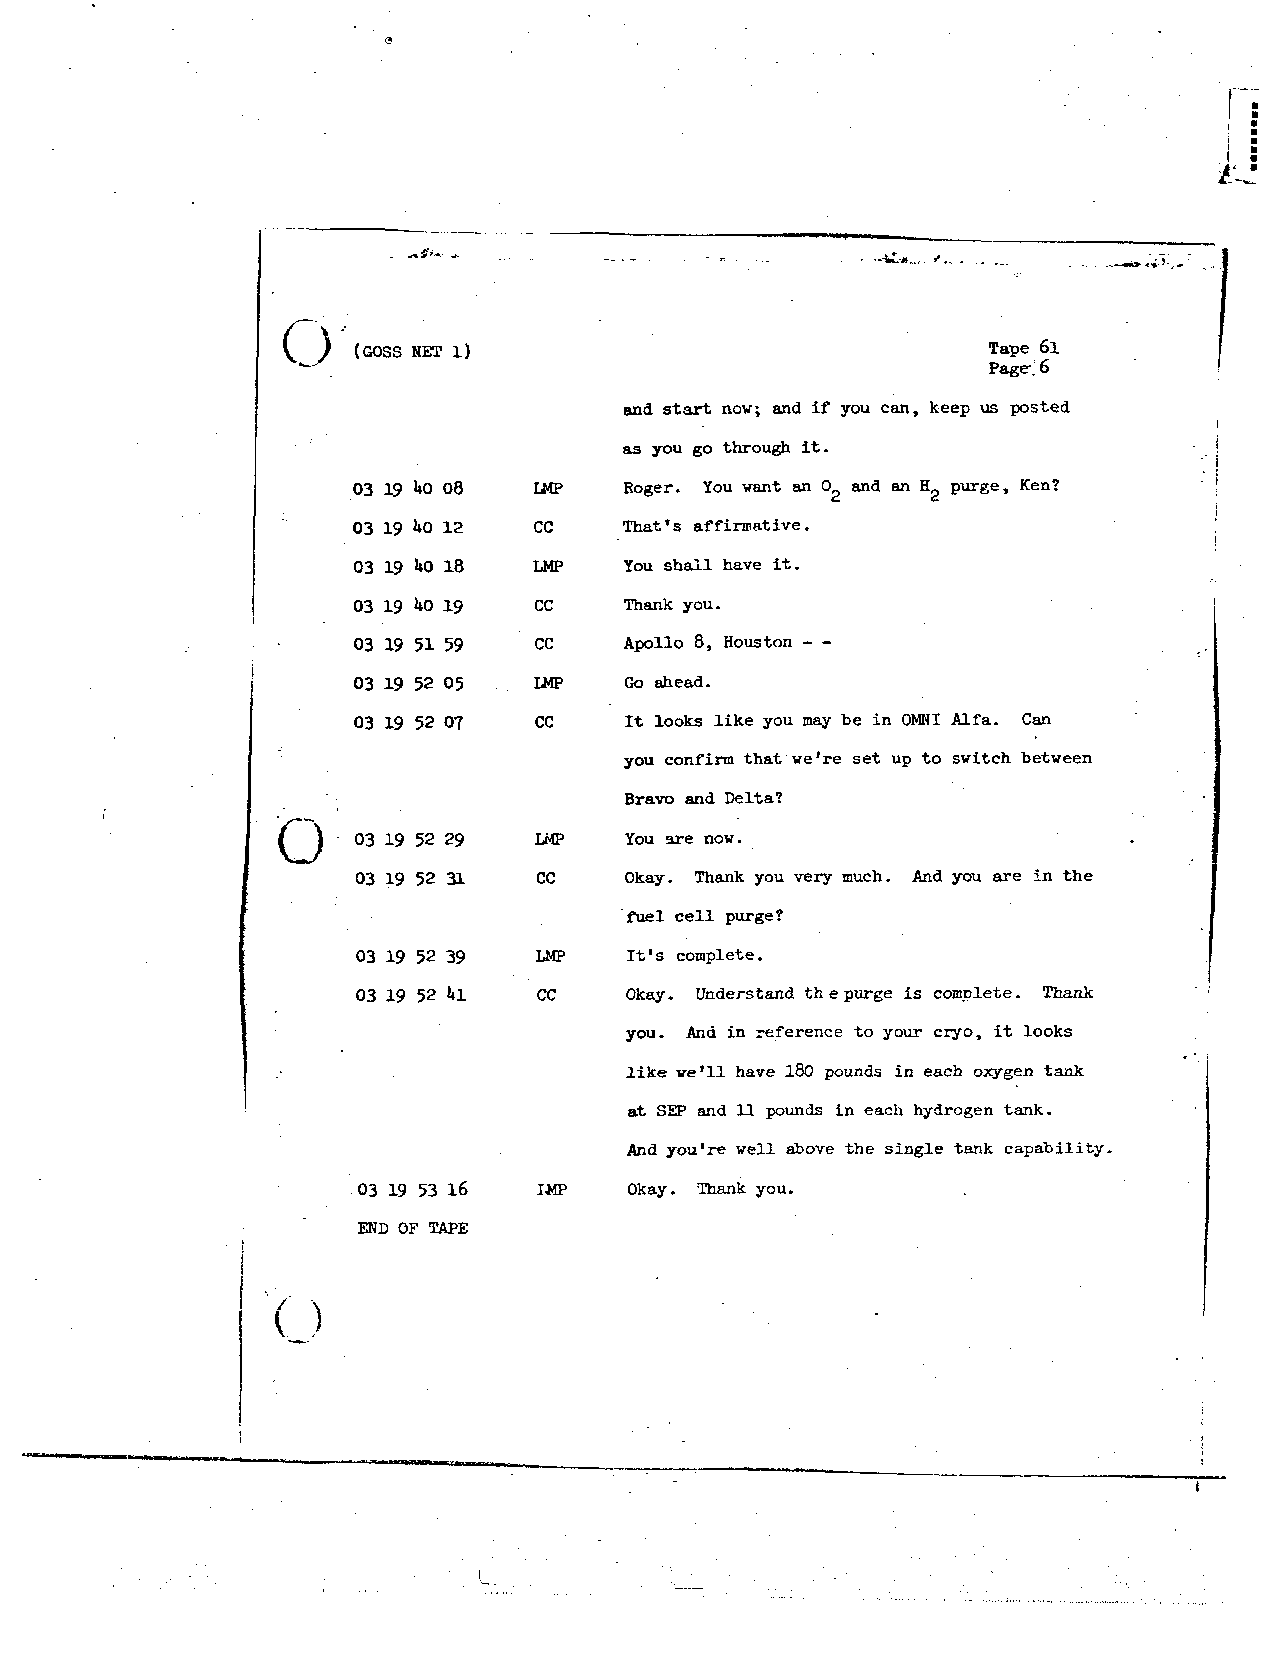 Page 490 of Apollo 8’s original transcript